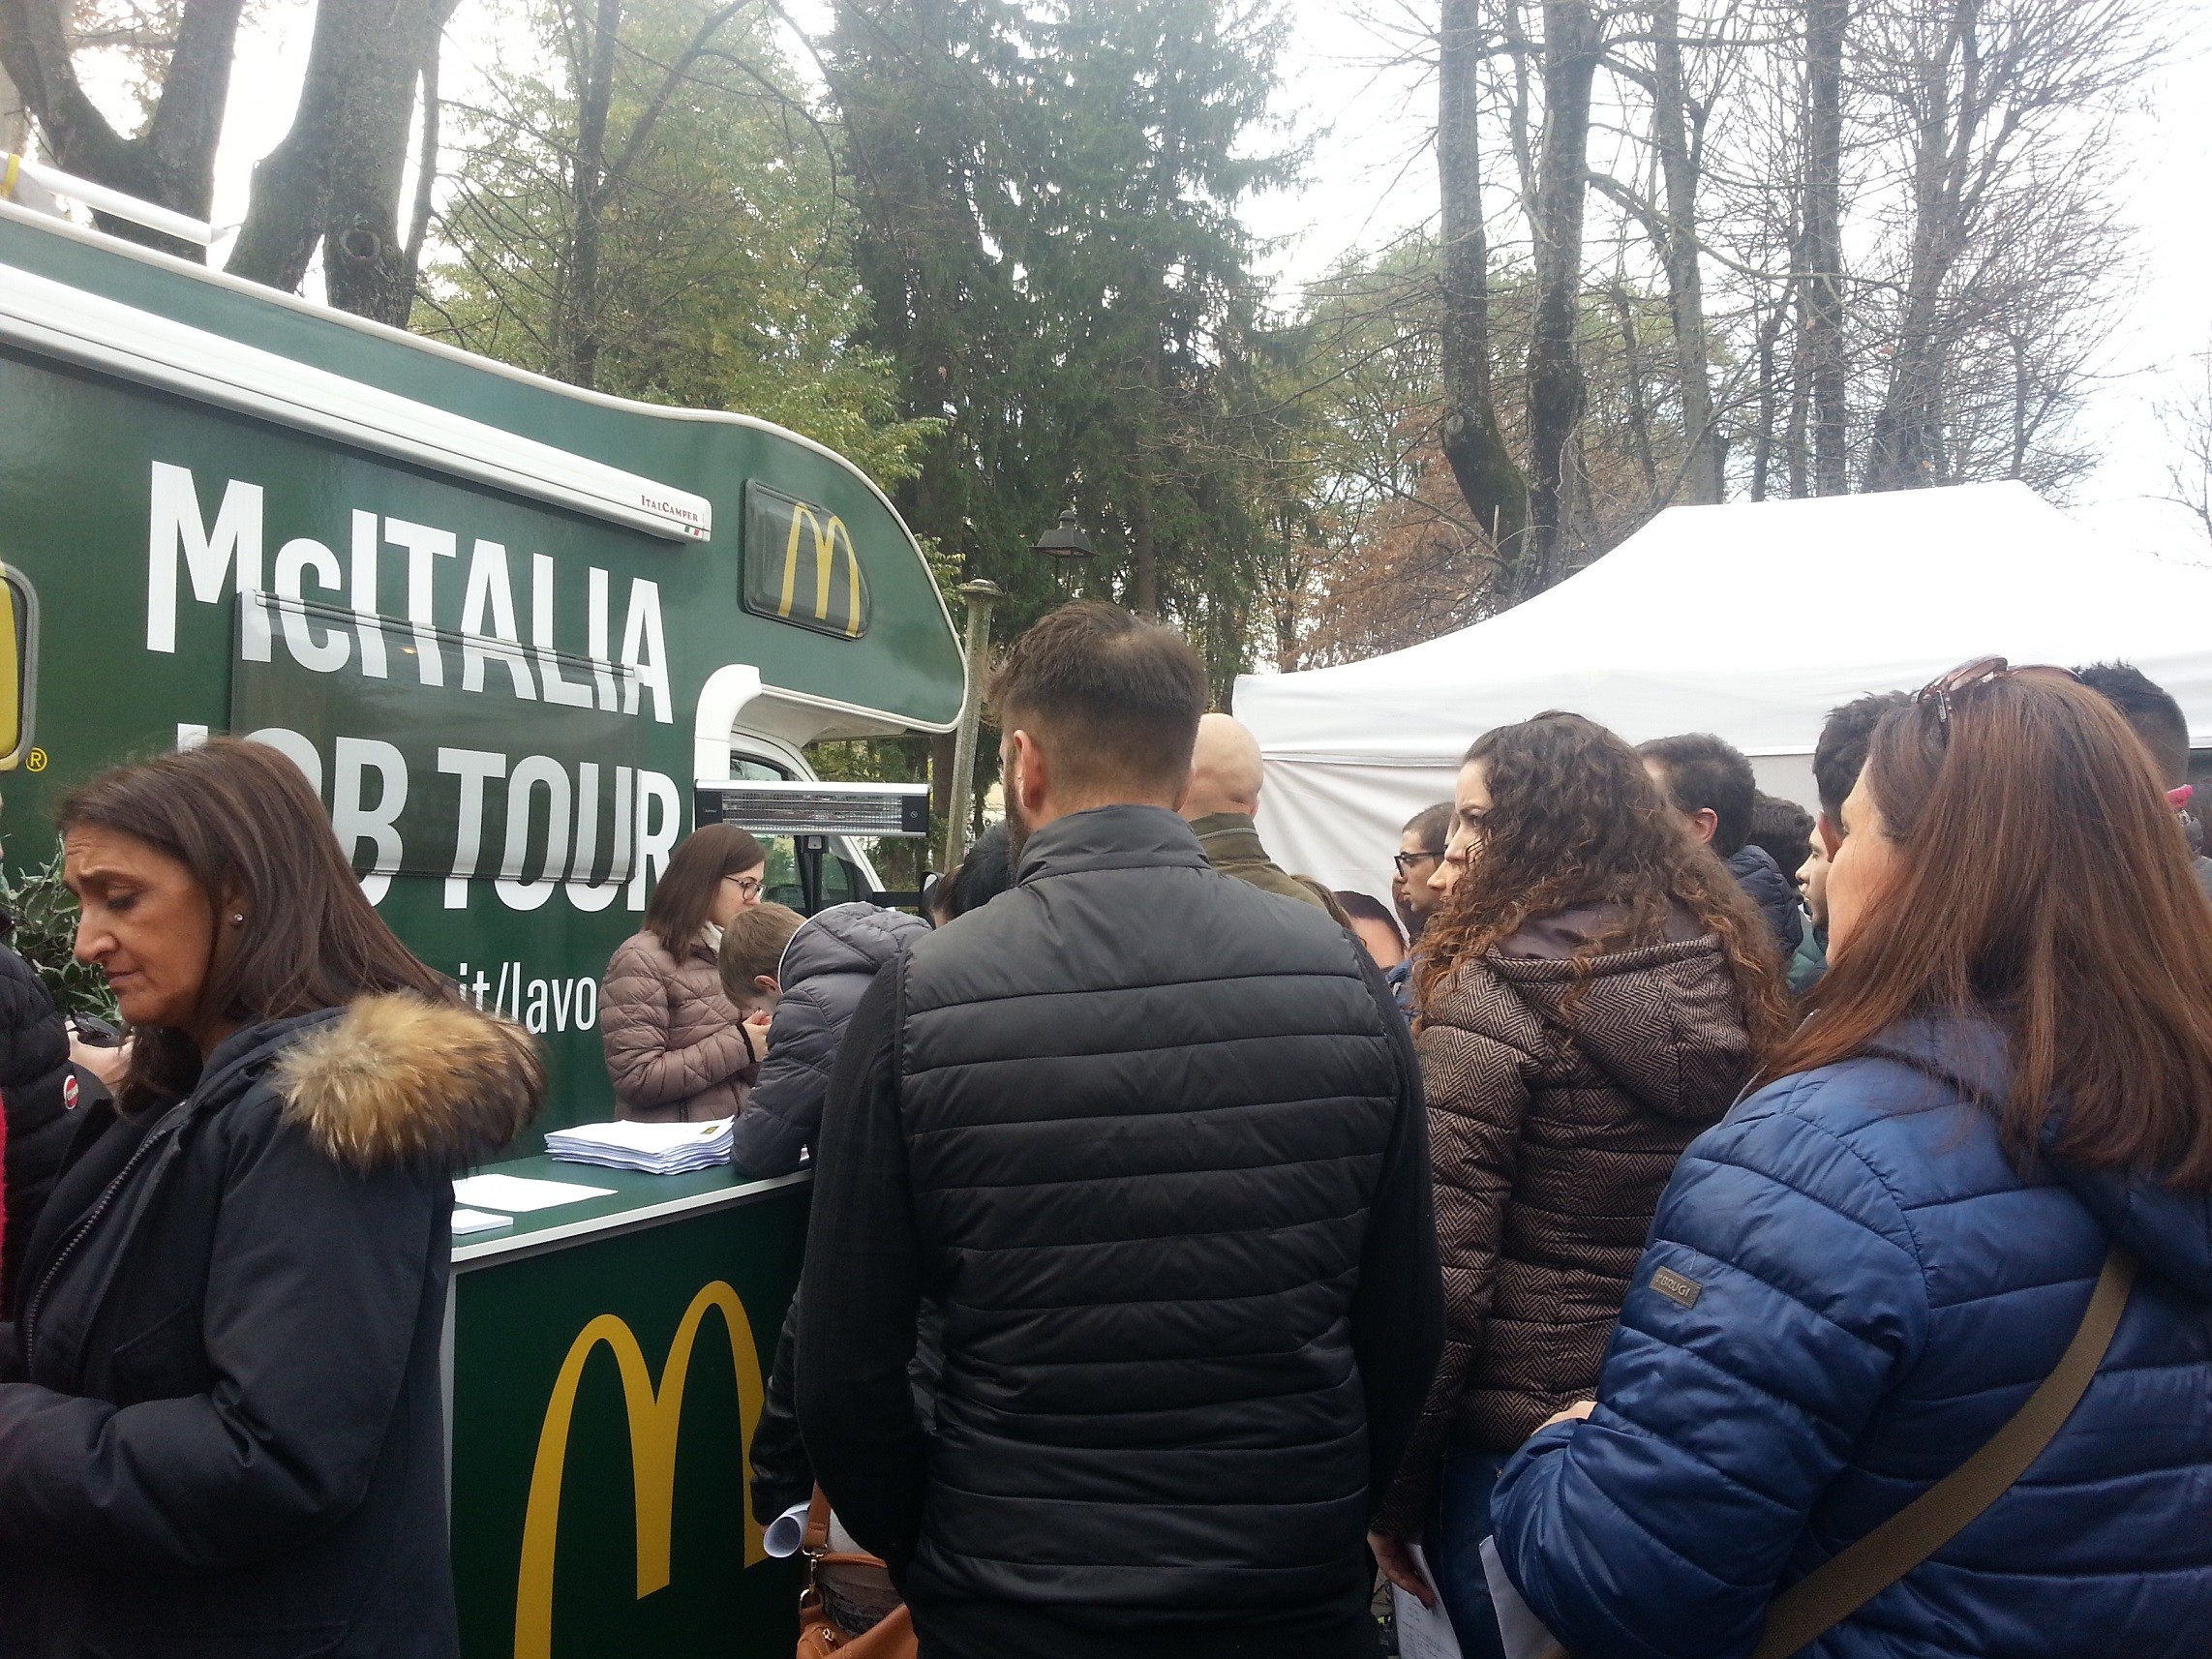 Il McItalia Job Tour fa tappa ad Avezzano i colloqui per 32 posti di lavoro da McDonald’s